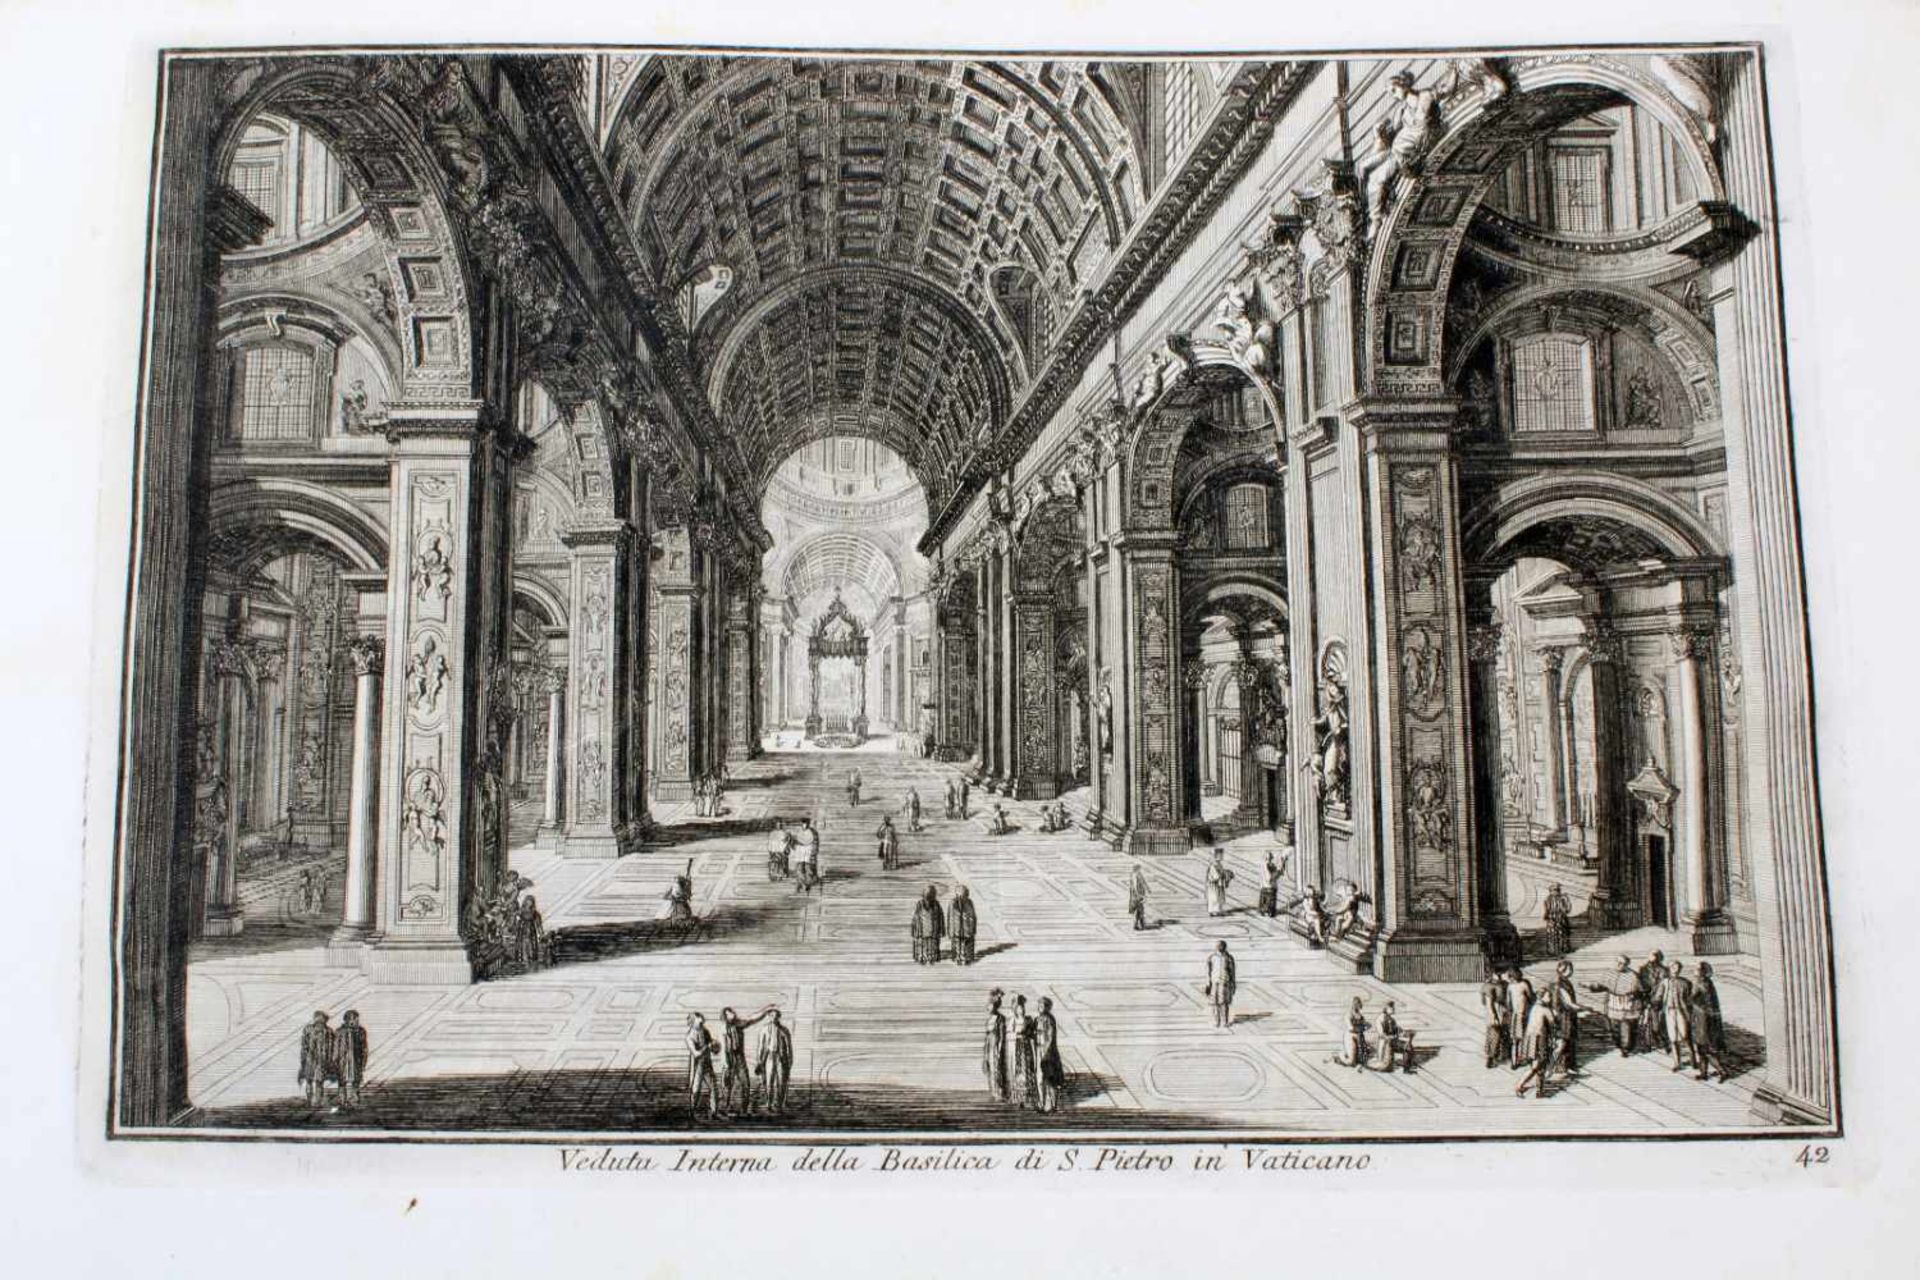 Roma - 64 Originalradierungen Ansichten von Rom - Giuseppe Vasi (1710 - 1782)Die Radierungen sind - Bild 19 aus 69